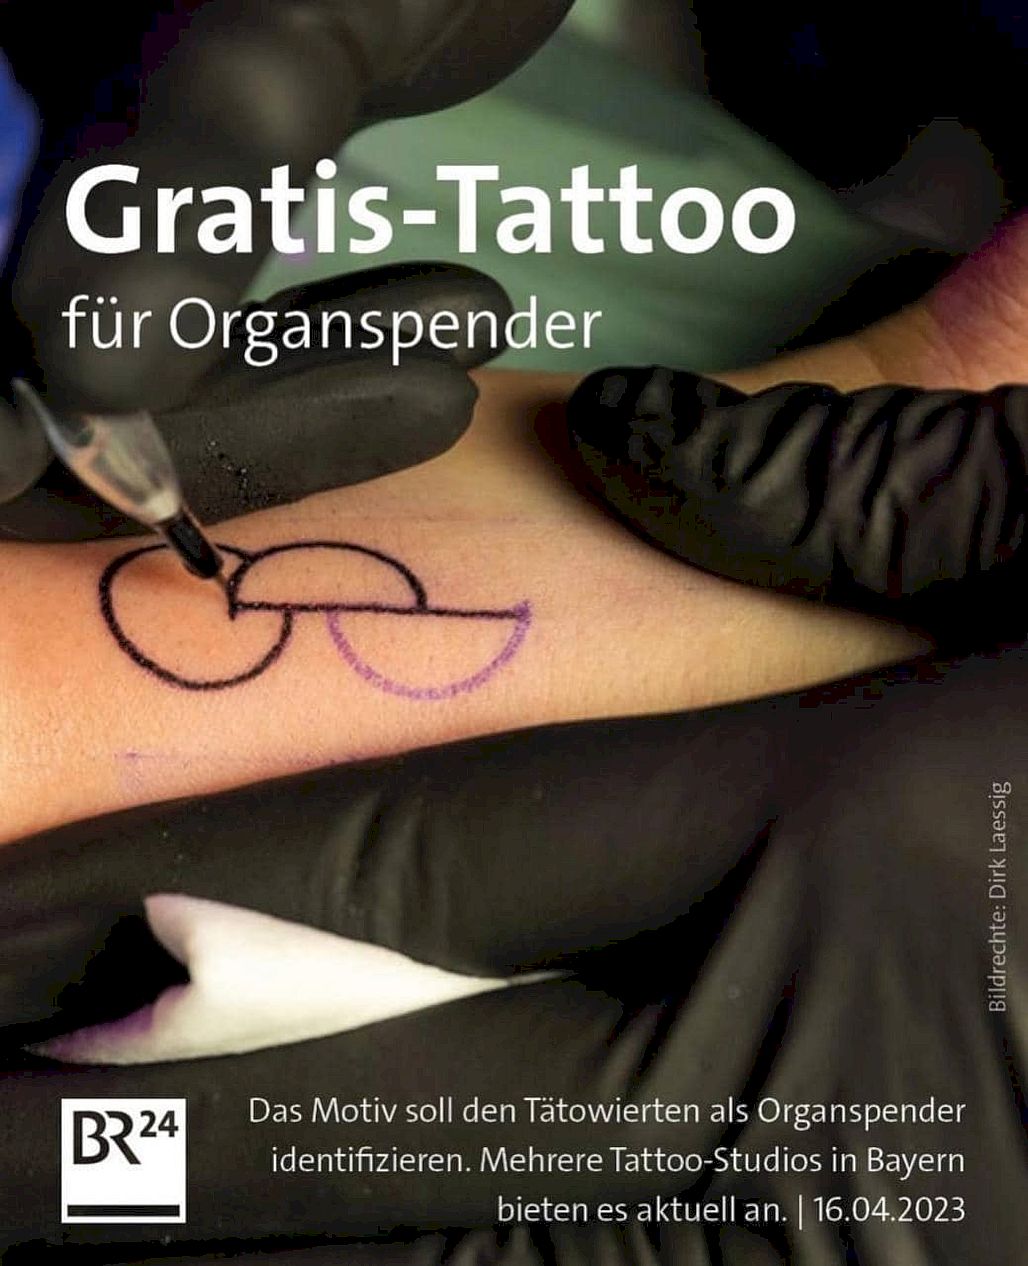 Bezpłatne tatuaże dla dawców narządów